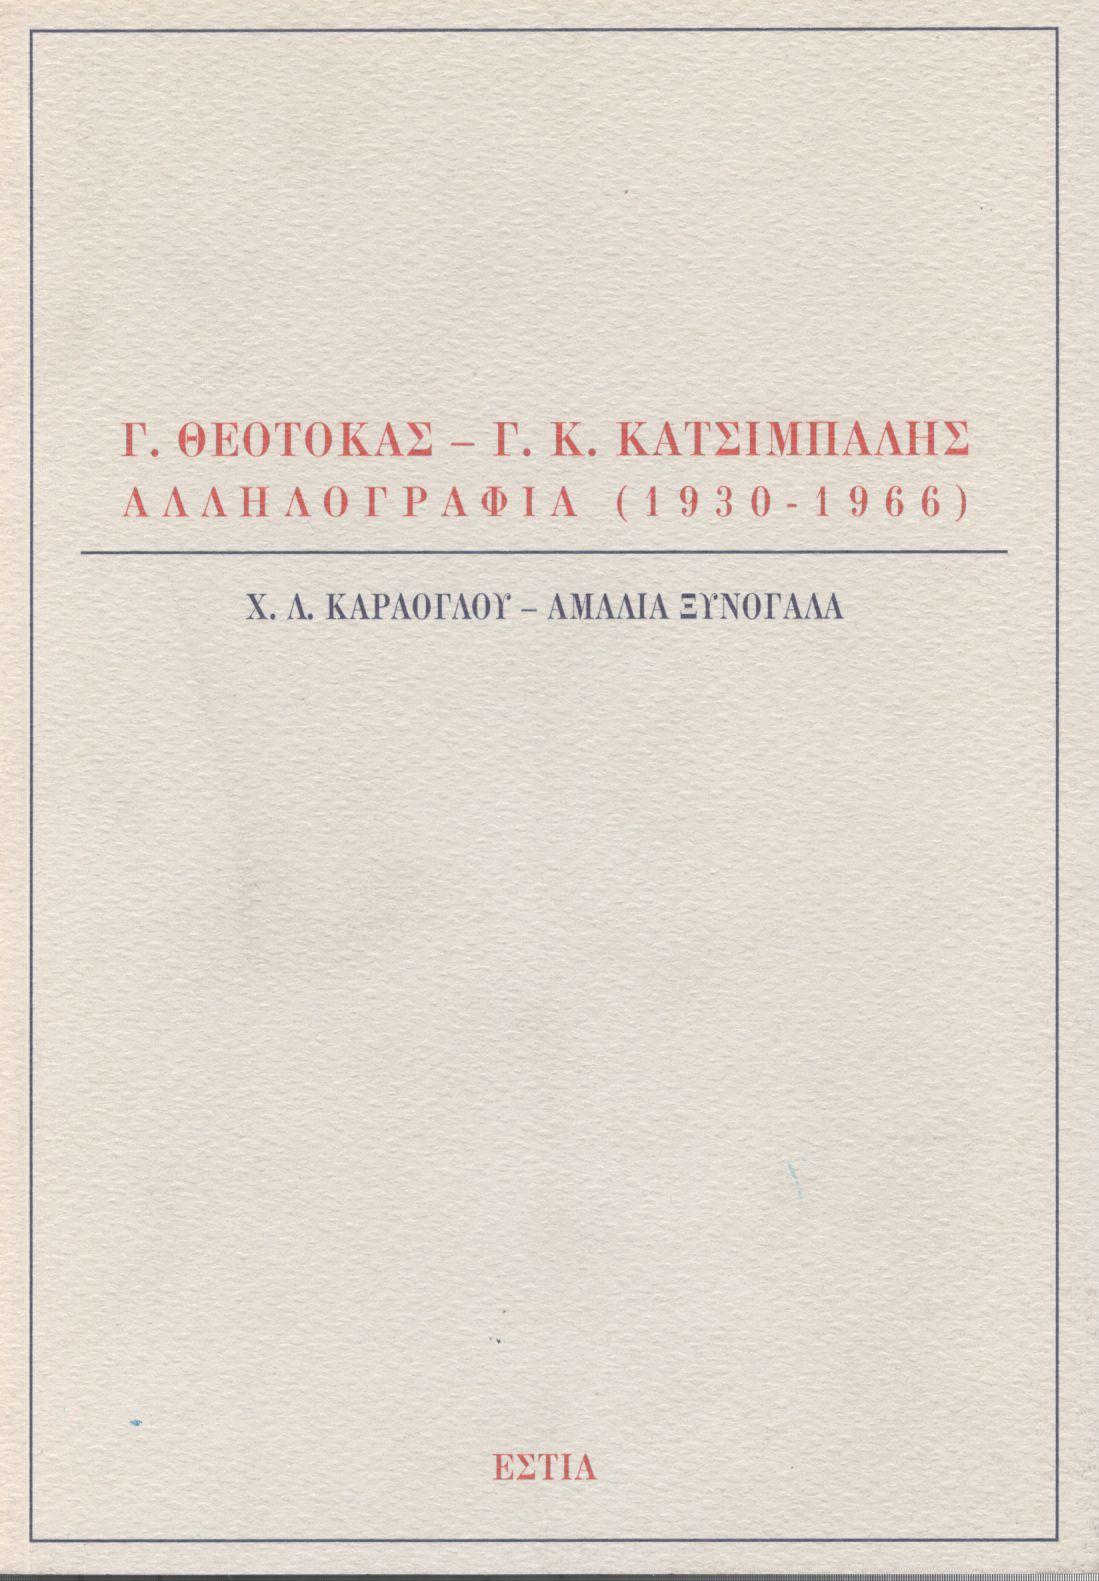 Γ. ΘΕΟΤΟΚΑΣ - Γ. Κ. ΚΑΤΣΙΜΠΑΛΗΣ, ΑΛΛΗΛΟΓΡΑΦΙΑ 1930-1966